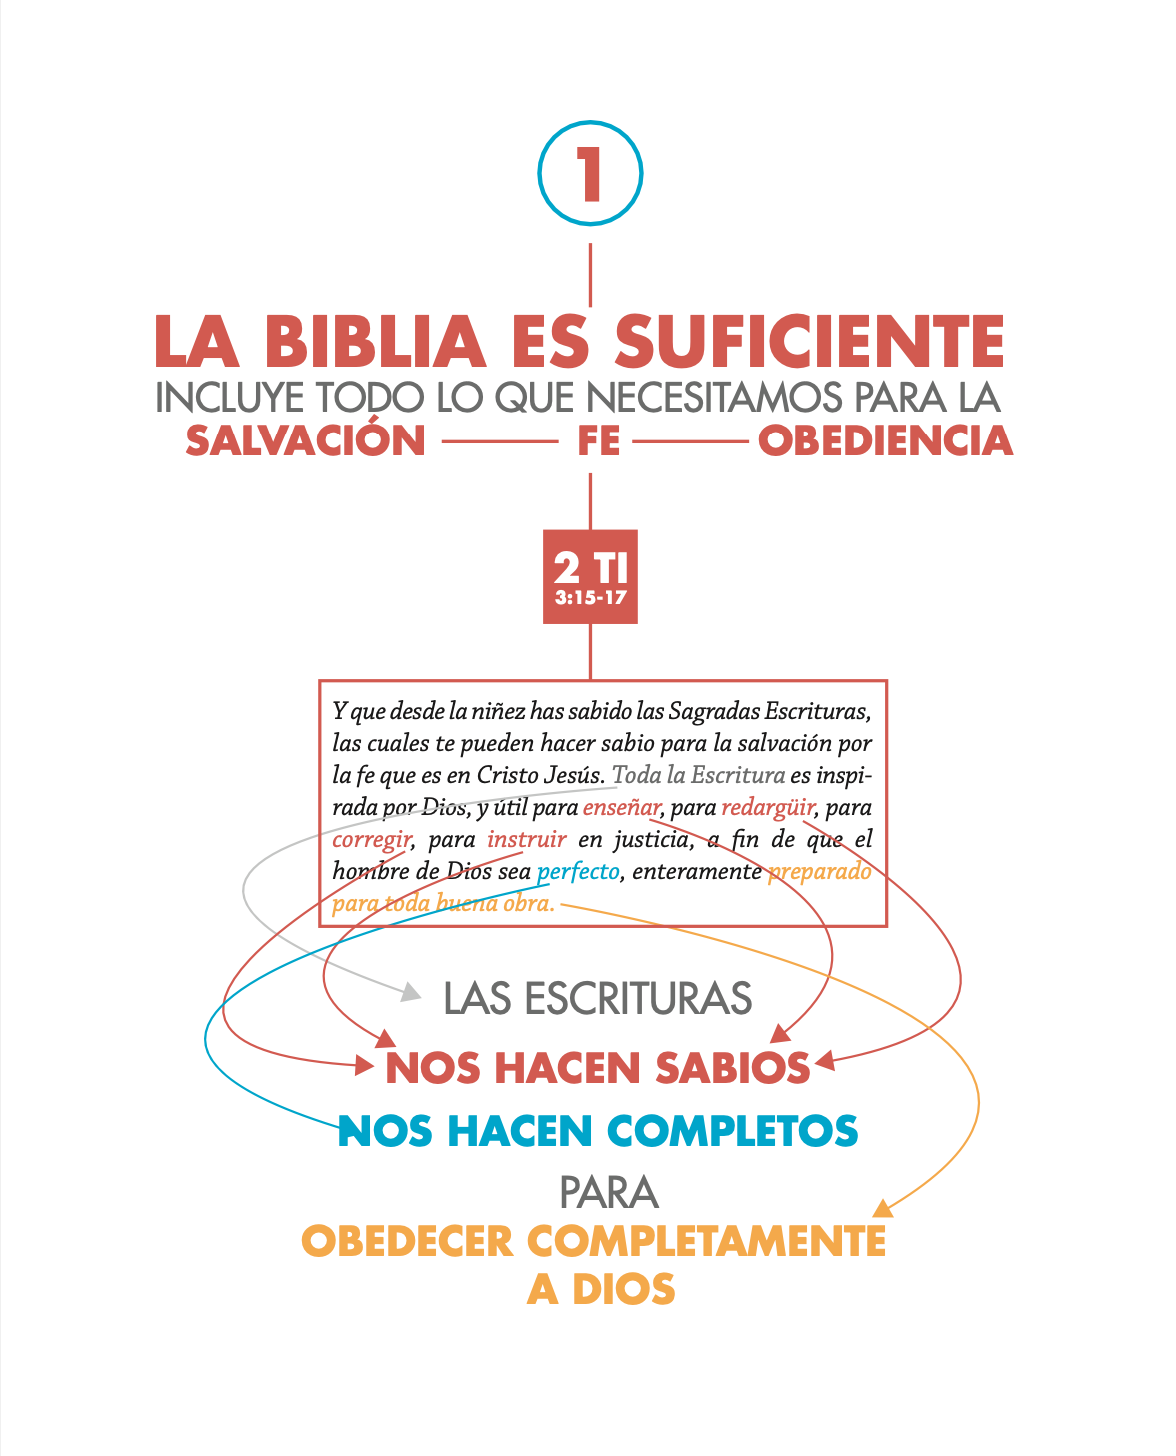 Guía de teología visual de la Biblia: Cómo ver y comprender la Palabra de Dios